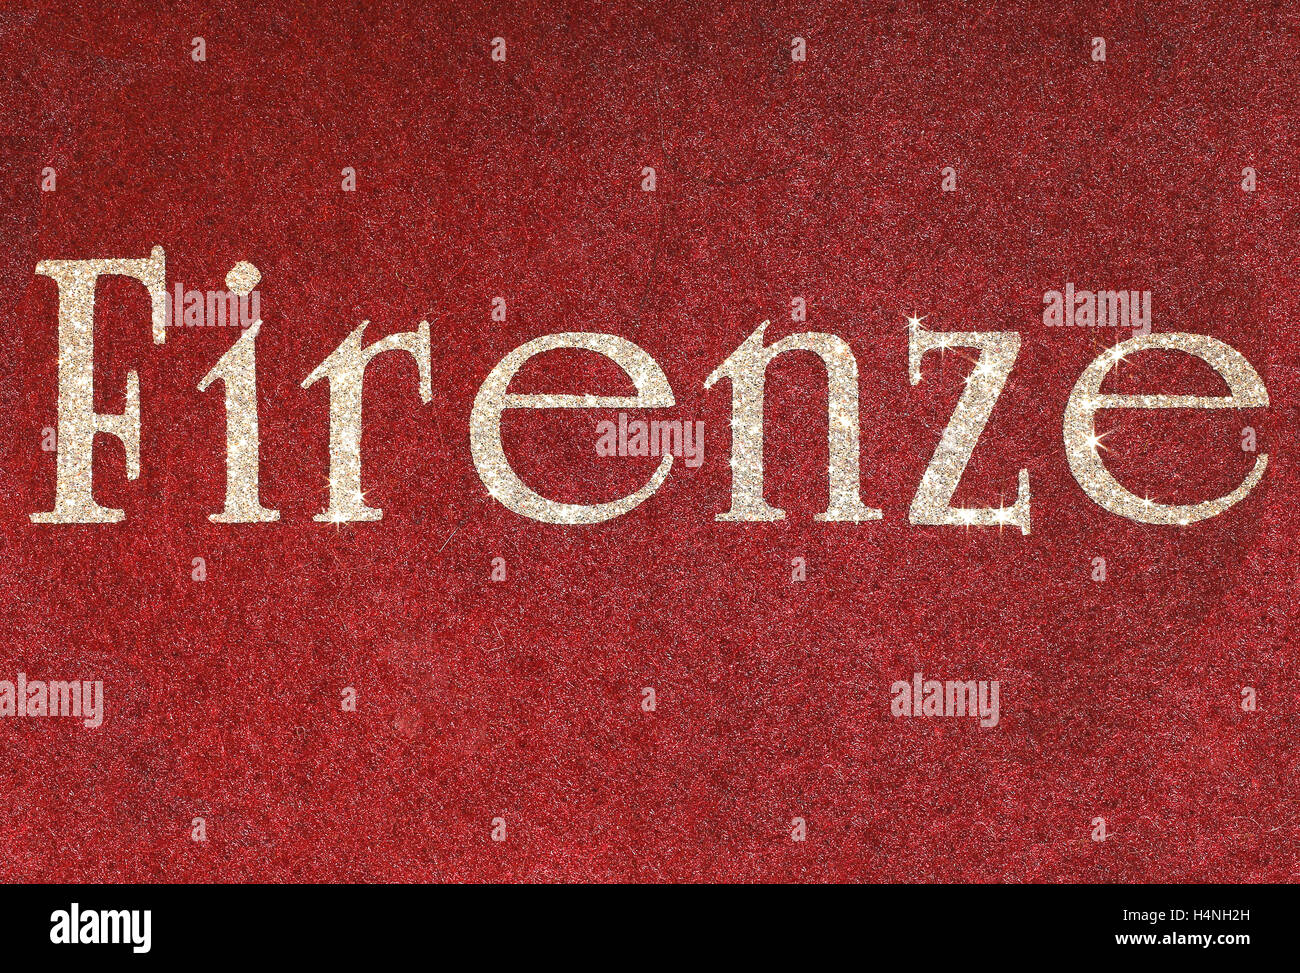 Firenze-geschrieben von einer italienischen Stadt auf rotem Stoff Hintergrund Stockfoto